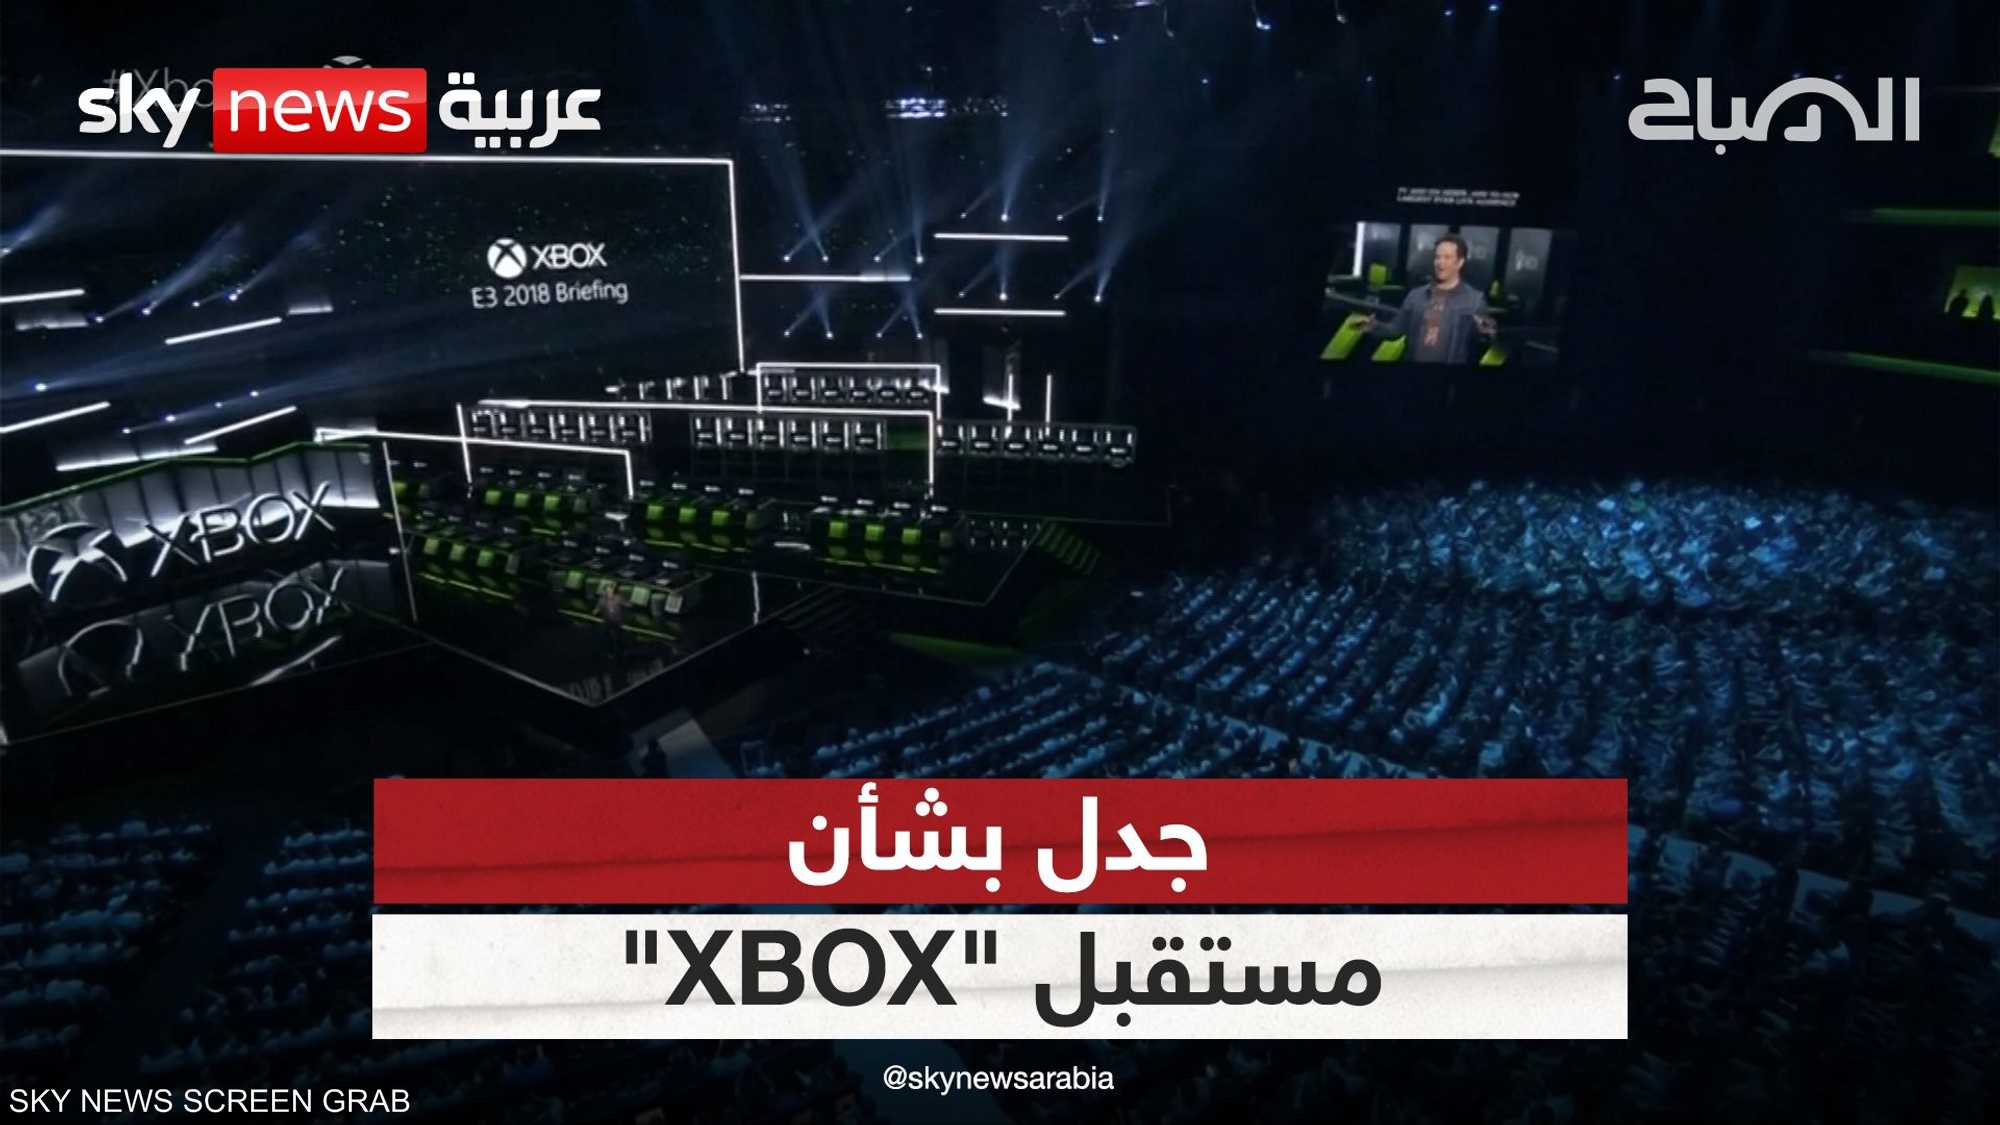 دعوات لمقاطعة "XBOX" بعد إقفالها استديوهات للألعاب